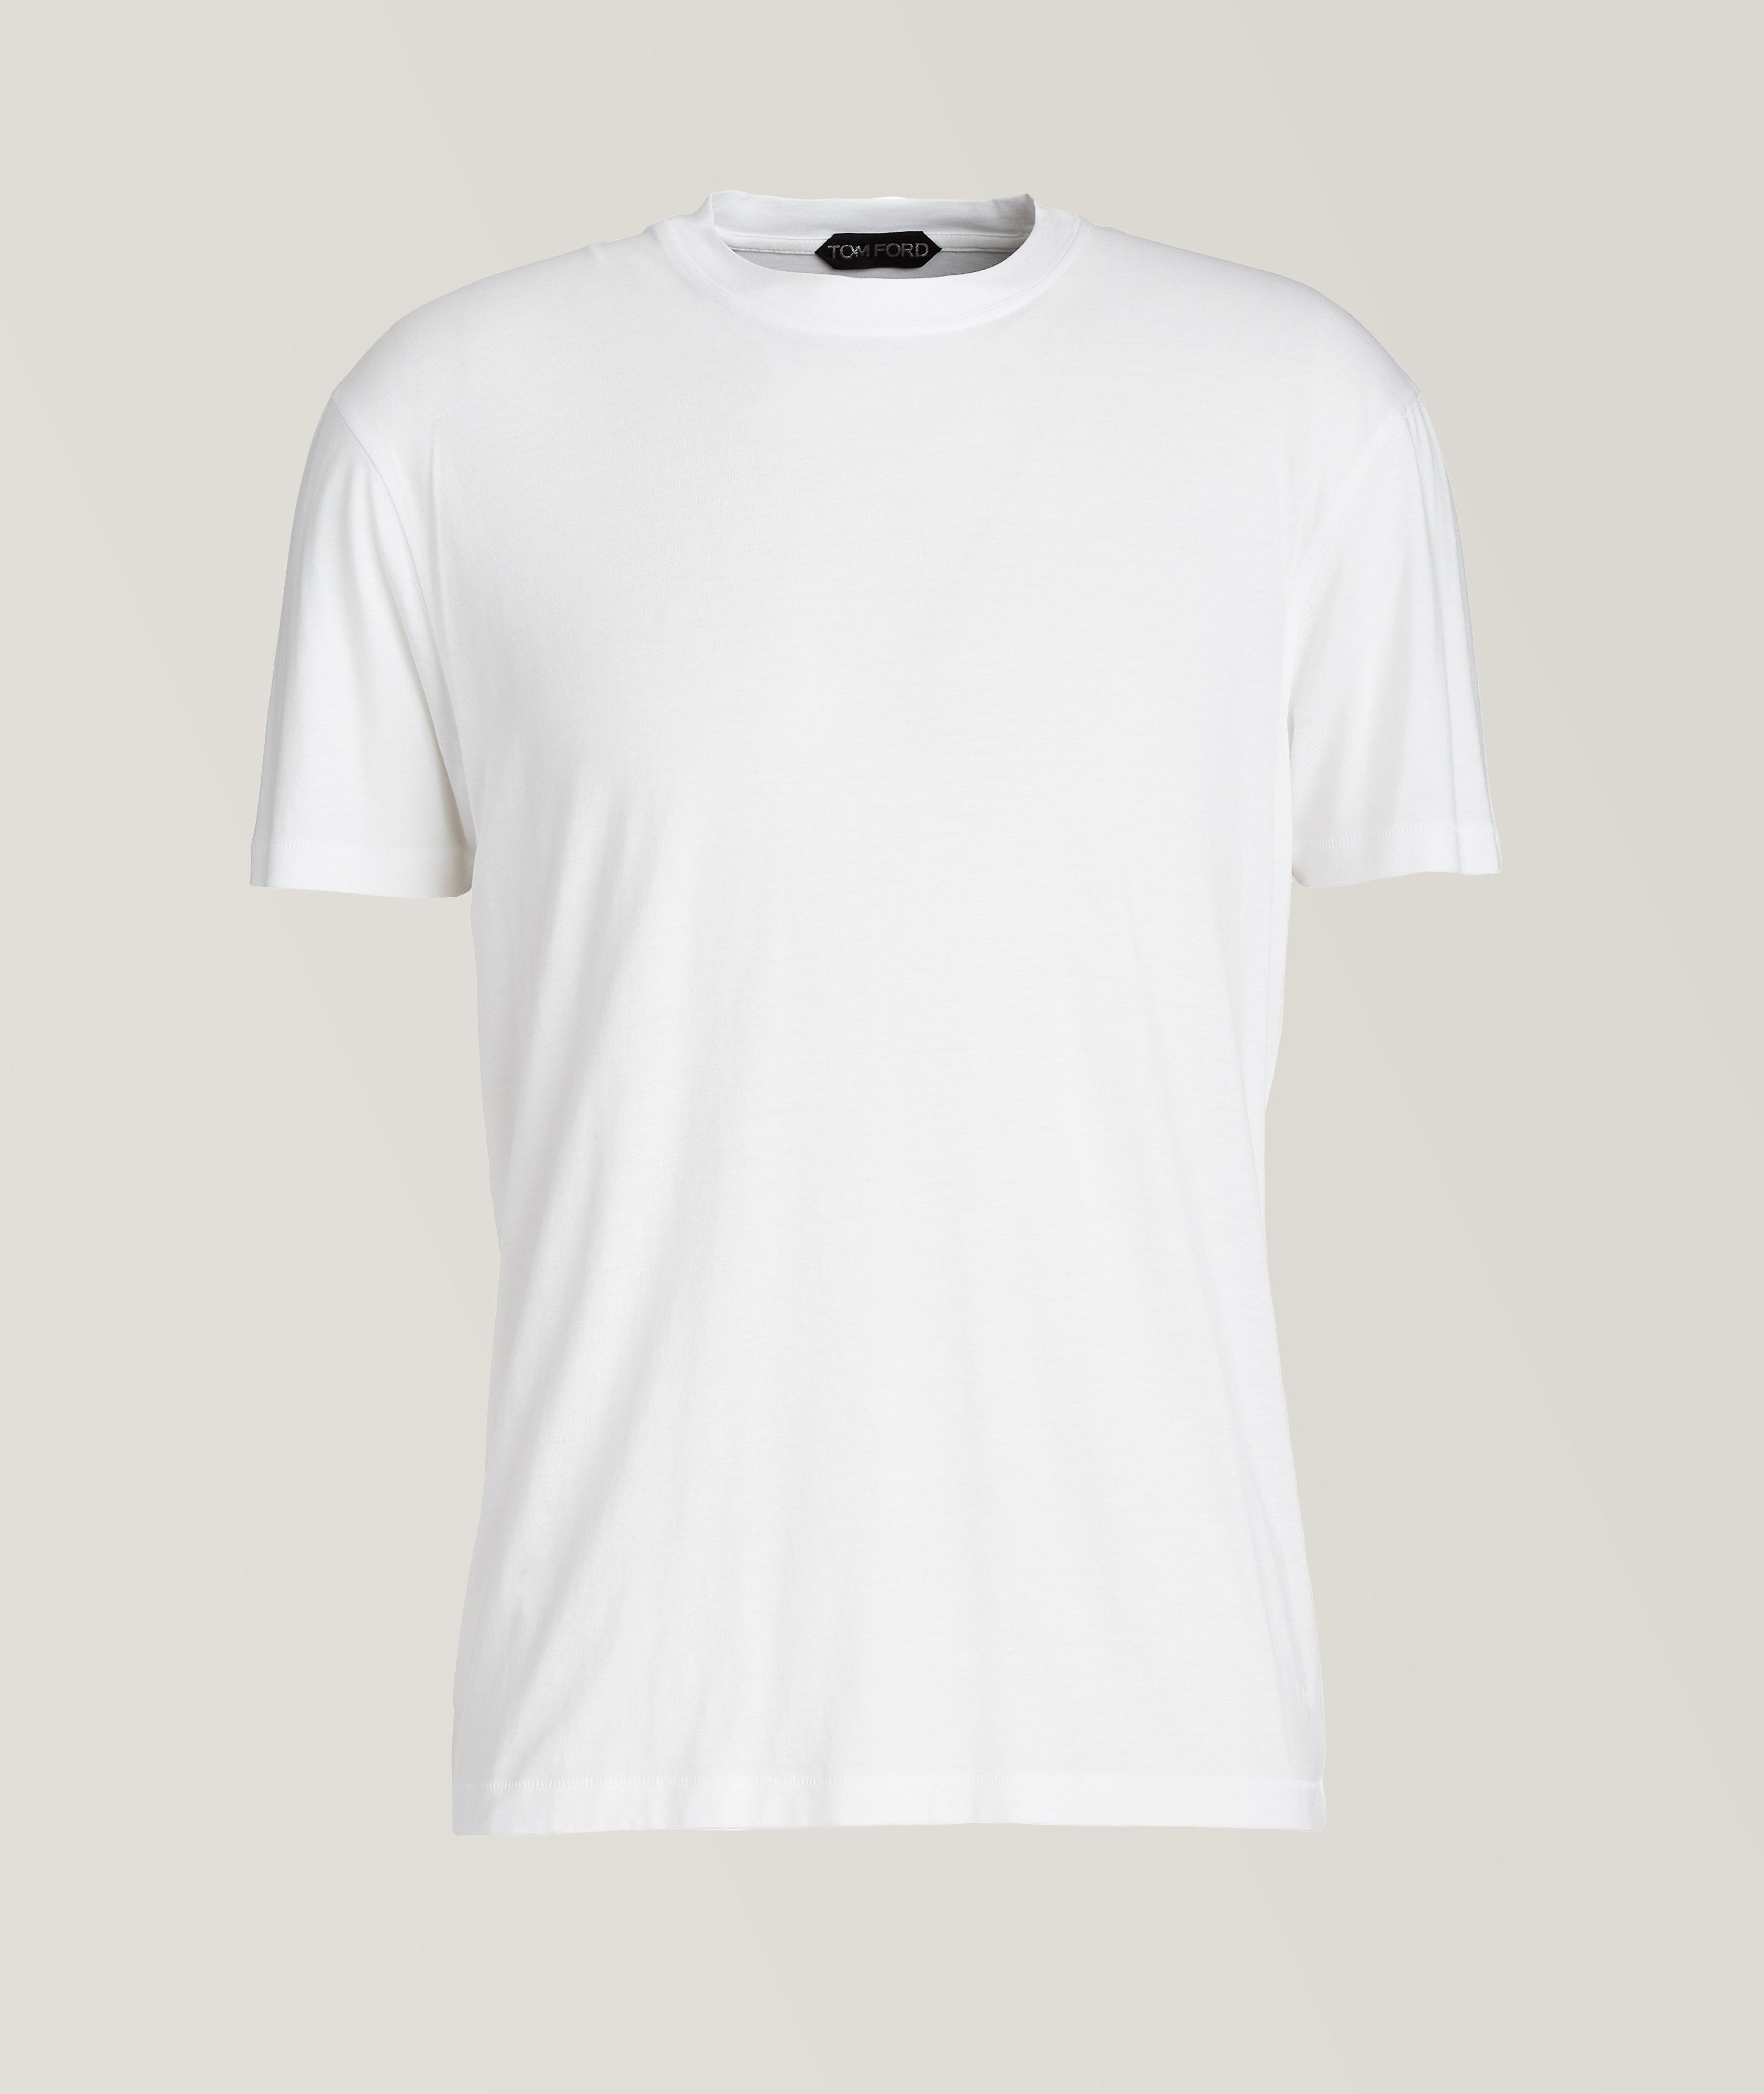 Mélange Cotton-Blend T-Shirt image 0